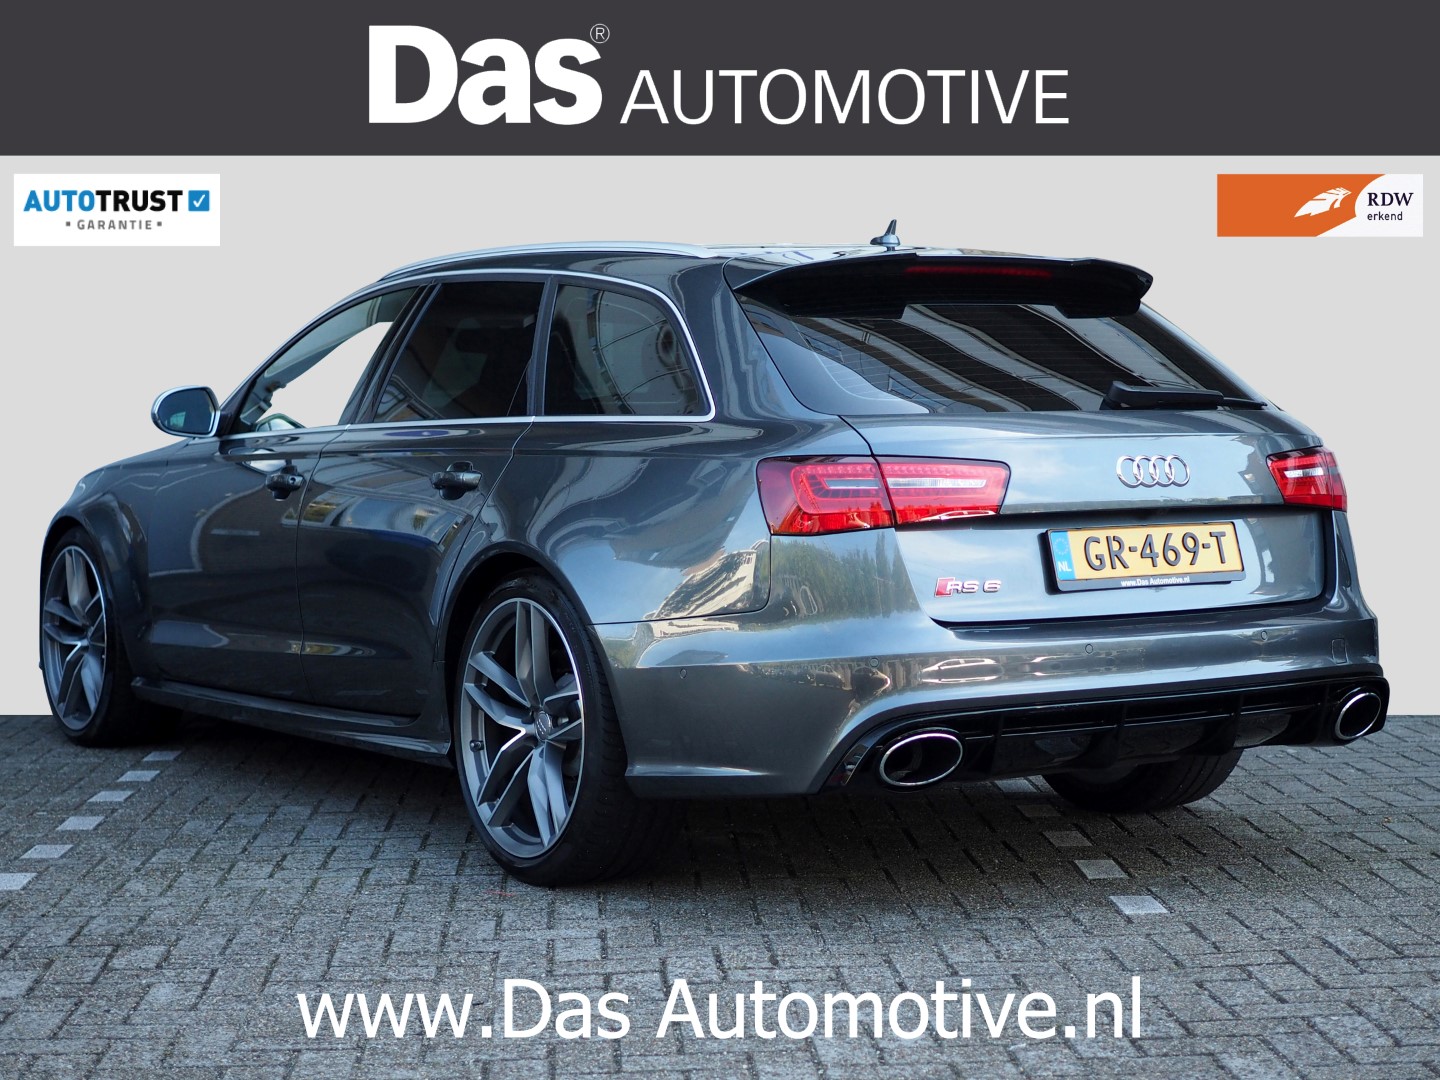 Arena Resultaat Wetenschap Te koop: Audi RS6 Avant (2013) uit Duitsland geimporteerd - Das Import